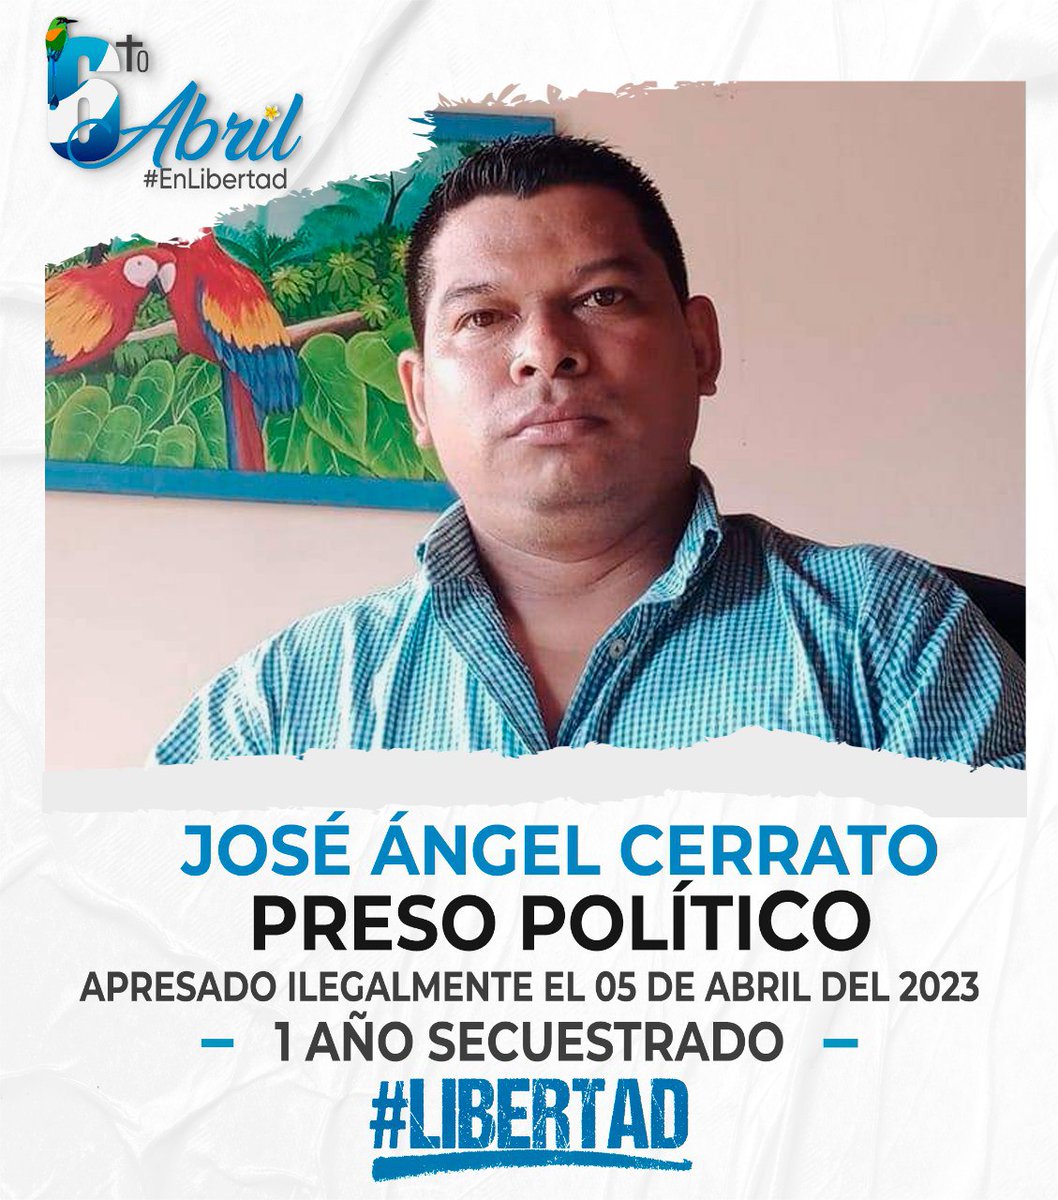 ¡Libertad para José Ángel Cerrato! José tiene un año secuestrado, encarcelado injustamente por delitos que no cometió. ¡Exigimos su liberación inmediata! #LibertadYa #SinJusticiaNoHabráPaz